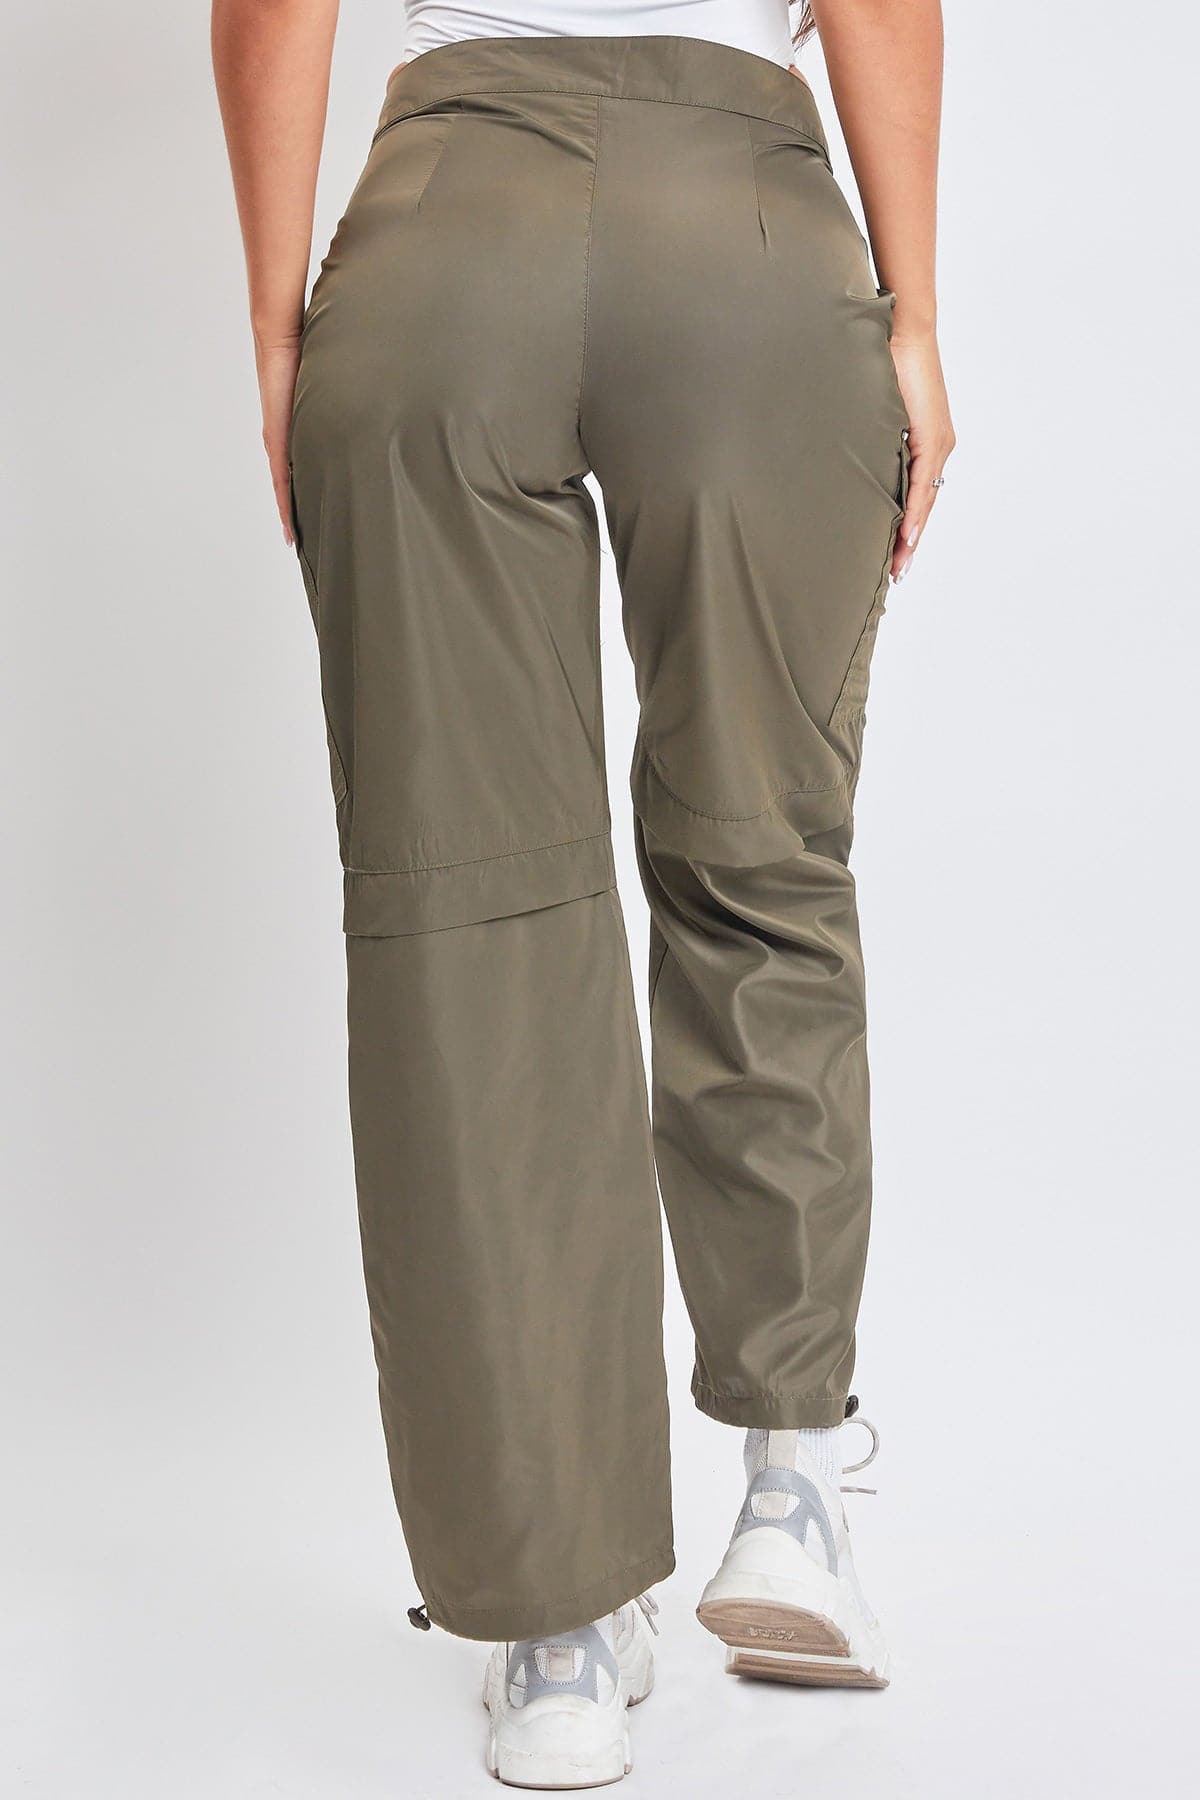 Women's Nylon Cargo Pants